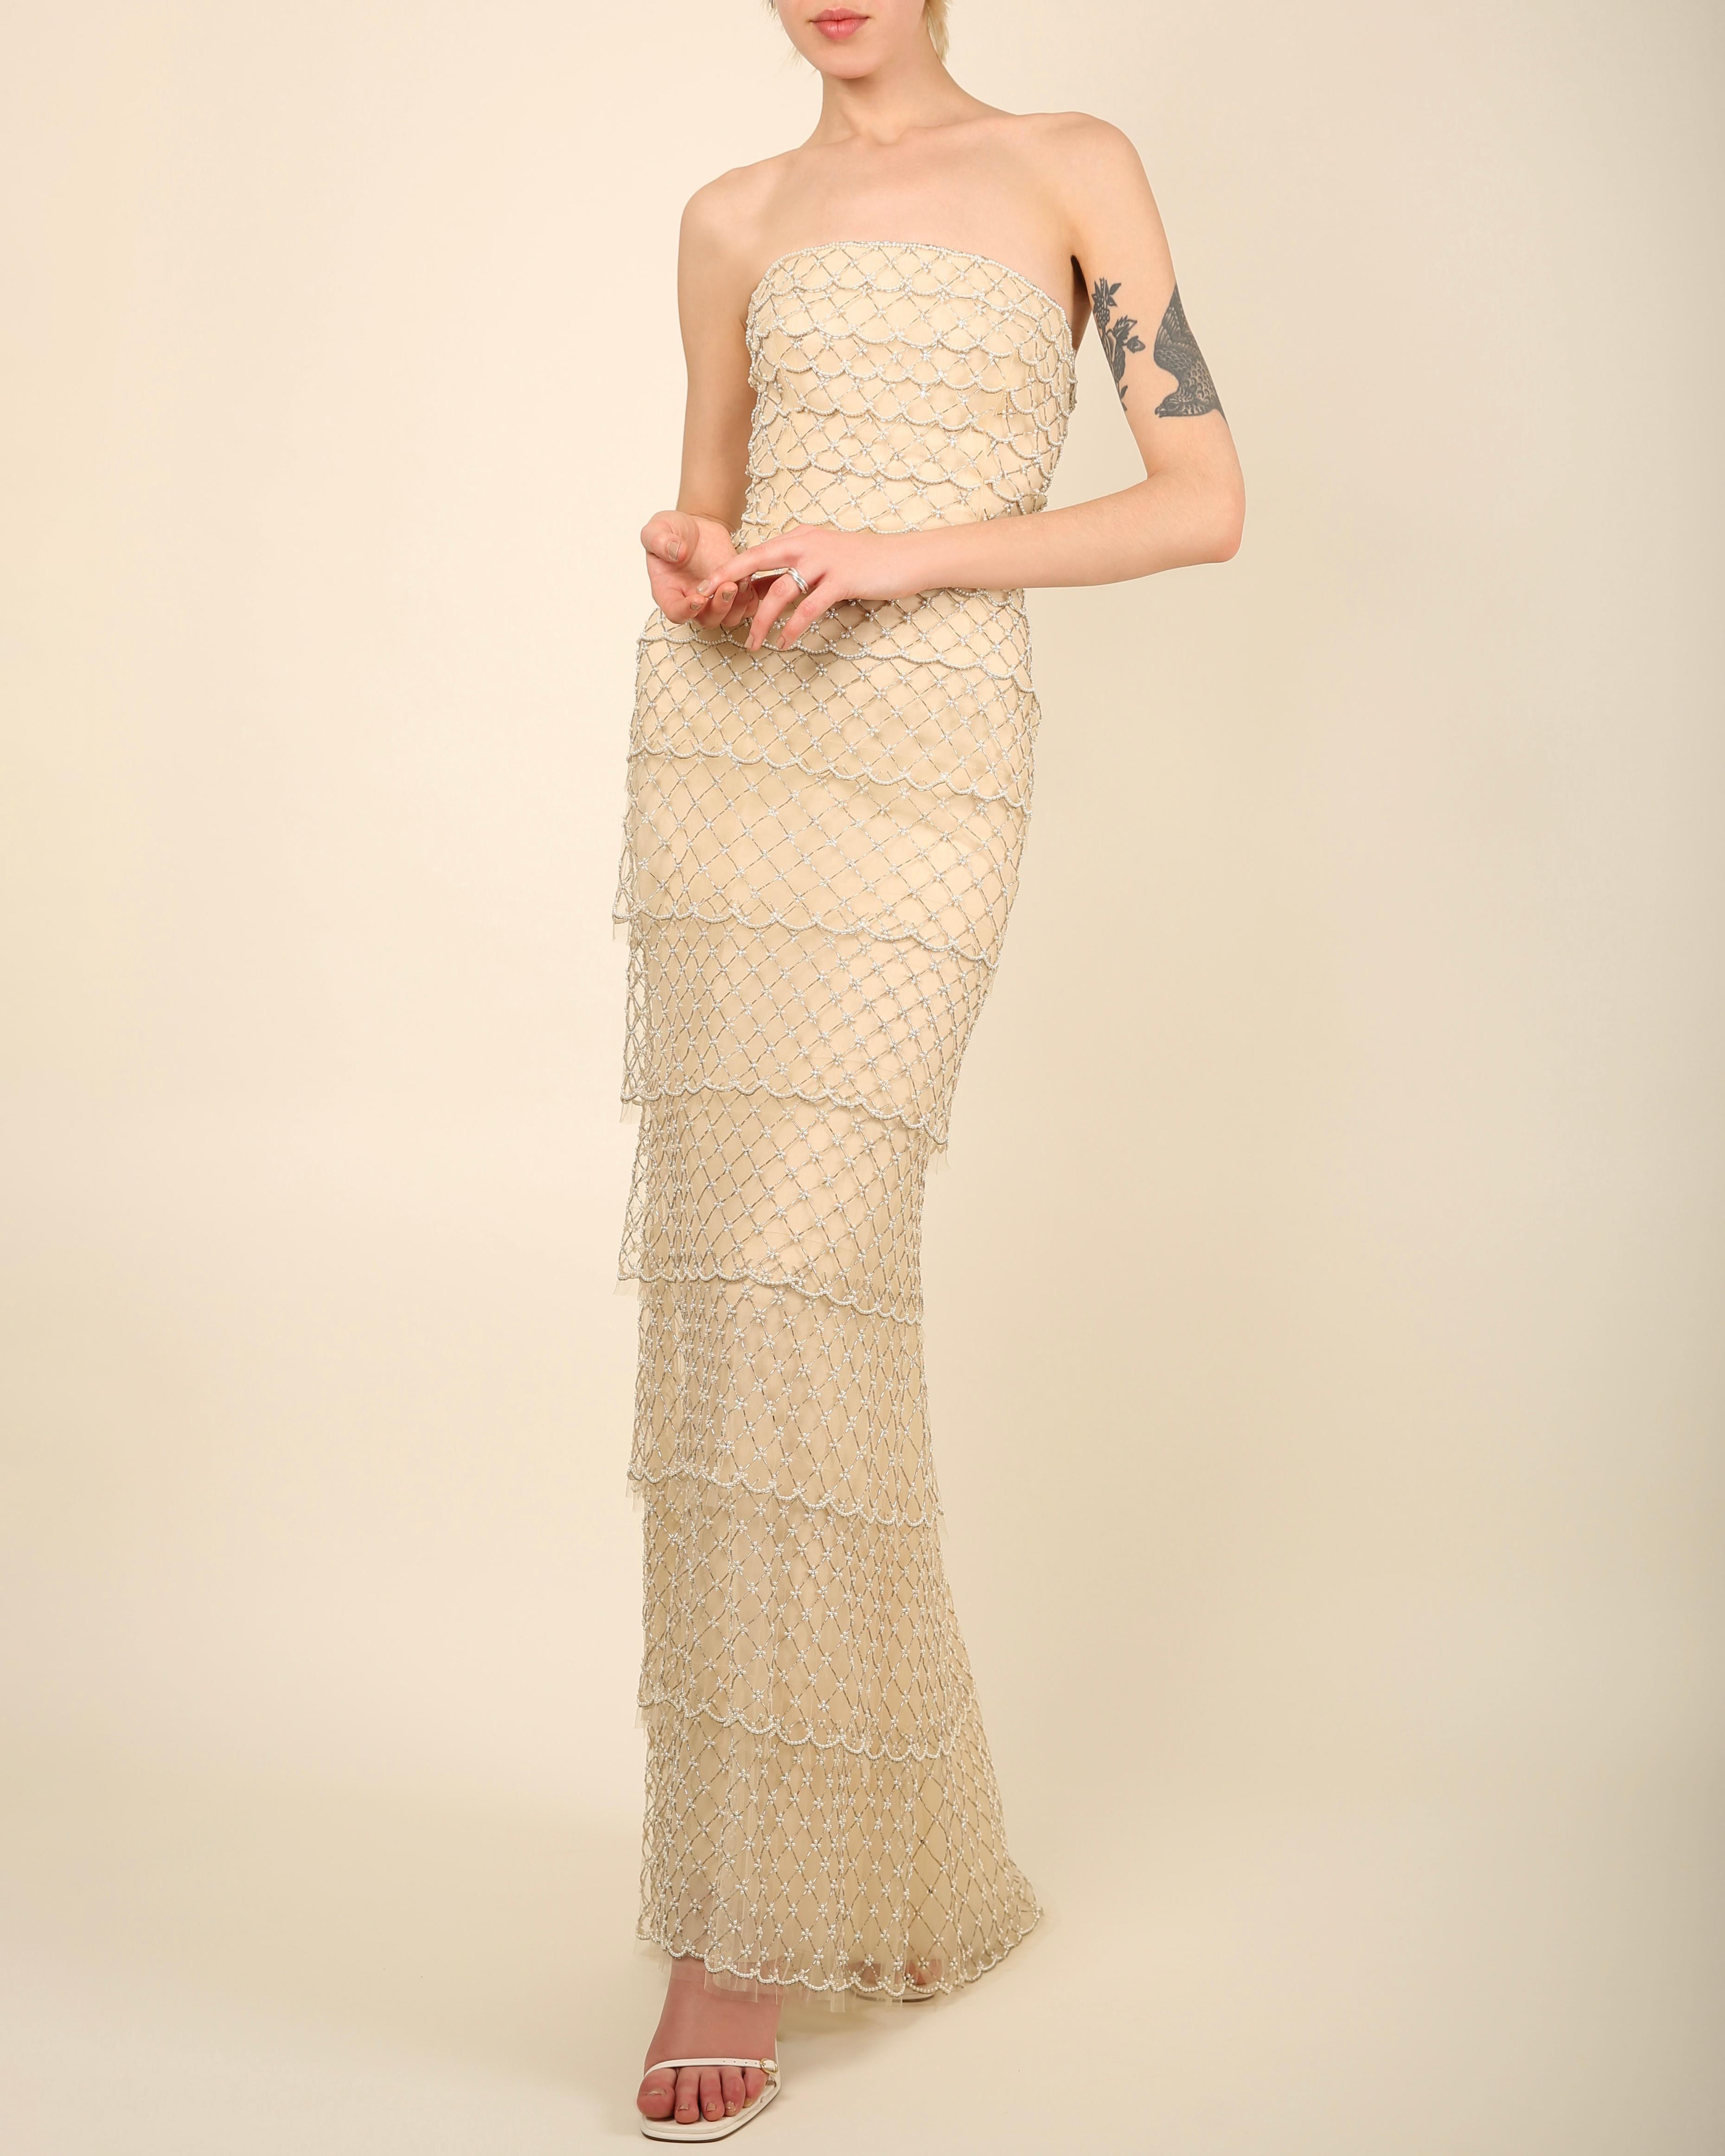 LOVE LALI Vintage By

Ein unglaublich seltenes Kleid von Oscar de la Renta Frühjahr/Sommer 2014
Champagnerfarbenes, trägerloses, bodenlanges Kleid aus Seide - auch als Alternative zu Weiß ein wunderschönes Hochzeitskleid
Besteht aus vier Lagen - die